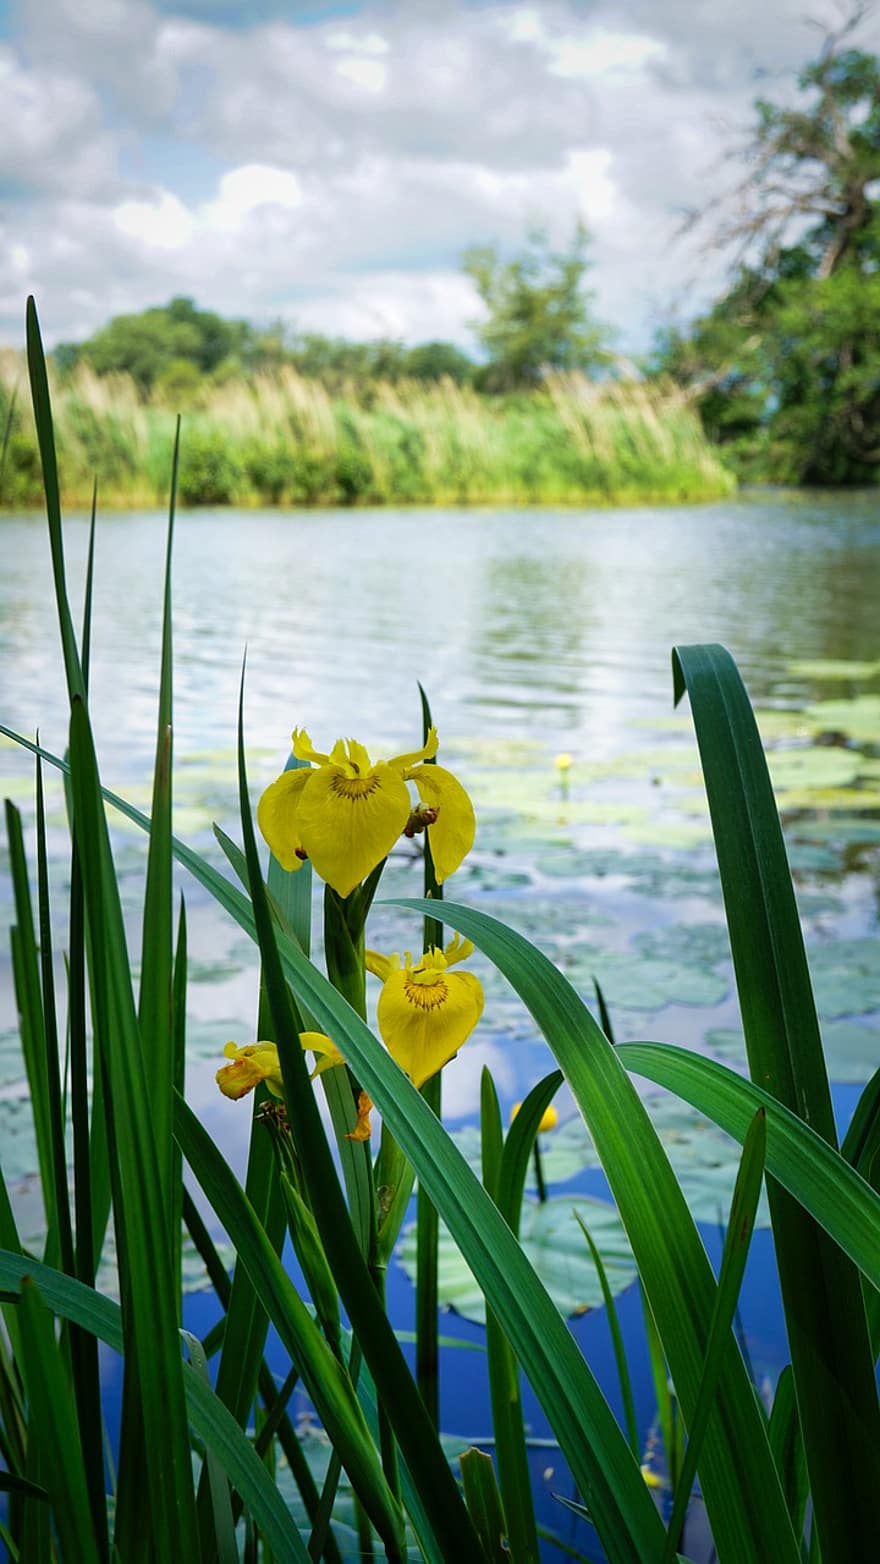 κίτρινη ίριδα, λιμνούλα, λουλούδια, κίτρινα άνθη, φύση, λίμνη, λουλούδι, πράσινο χρώμα, καλοκαίρι, φυτό, κίτρινος